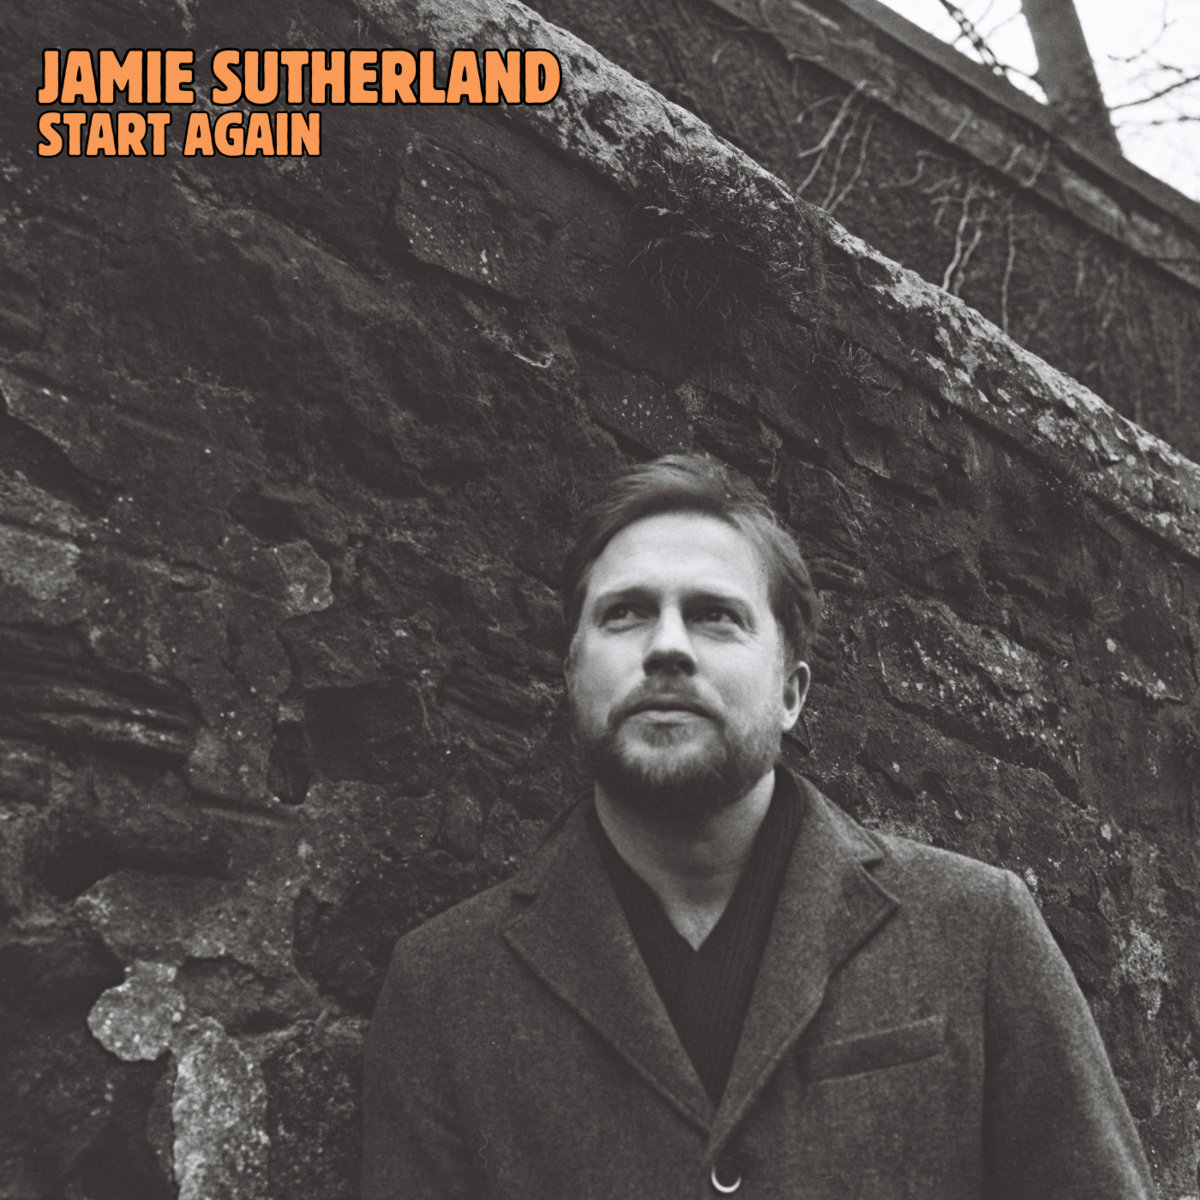 LISTEN: “Start Again” by Jamie Sutherland